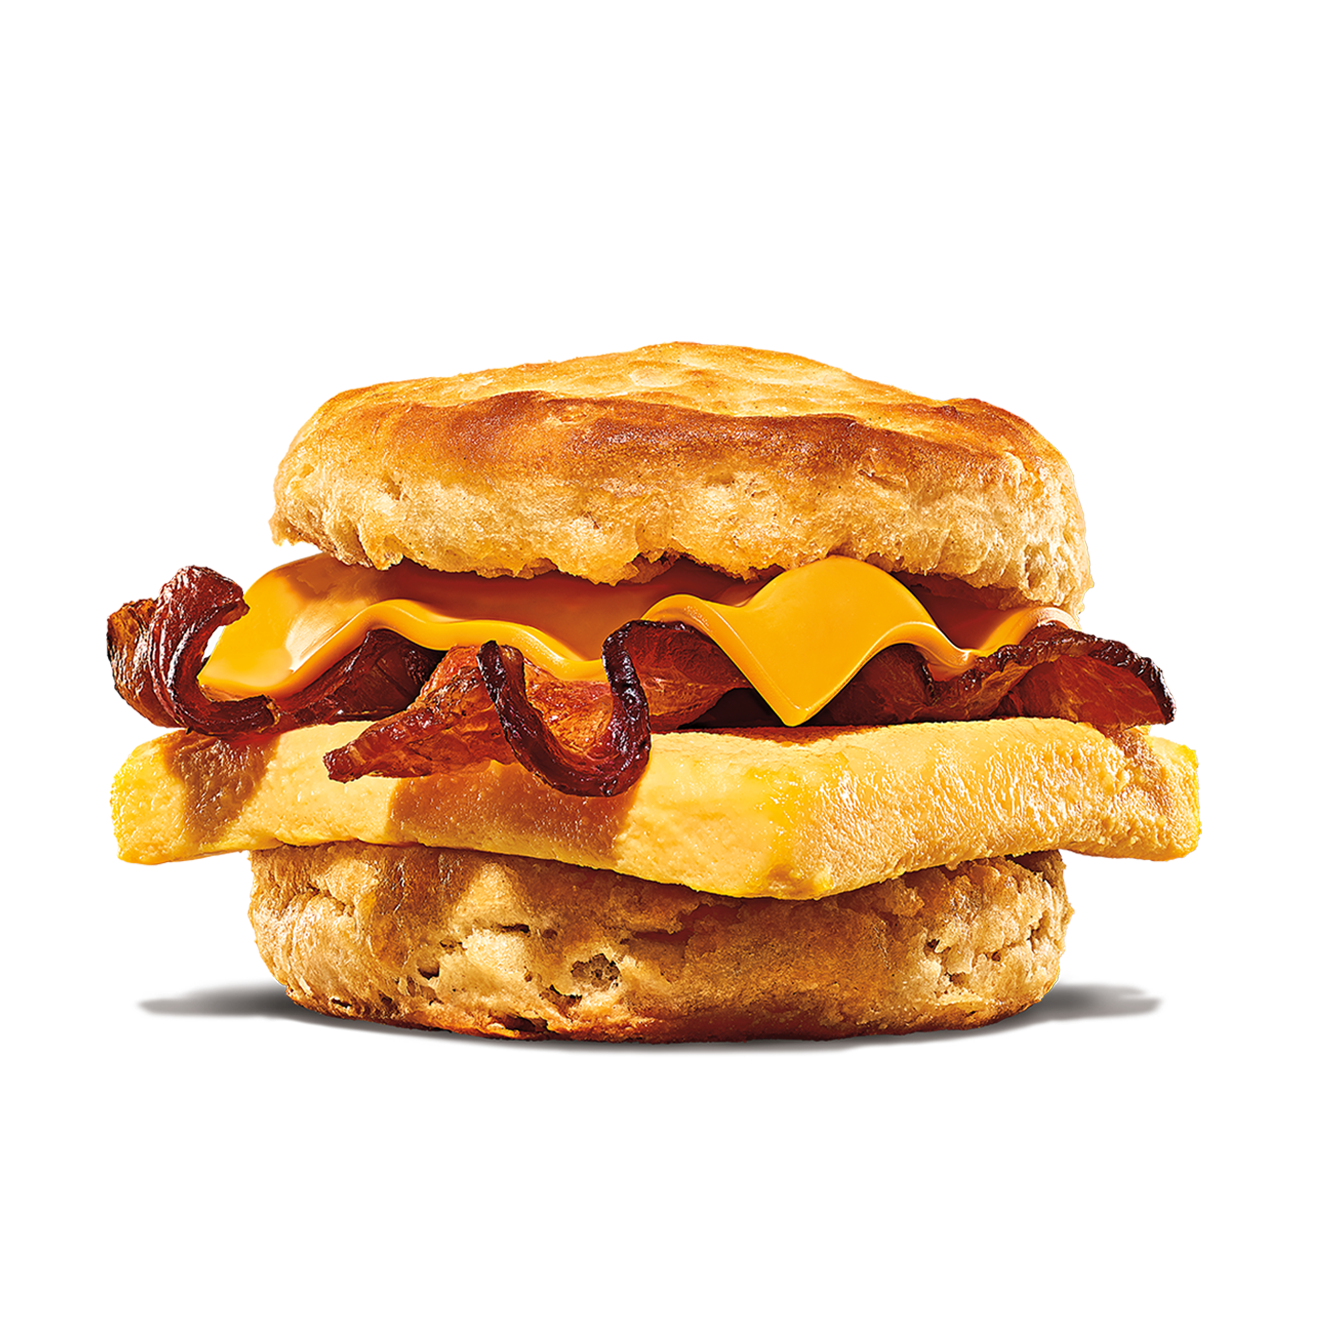 Burger King La Puente (909)628-6201